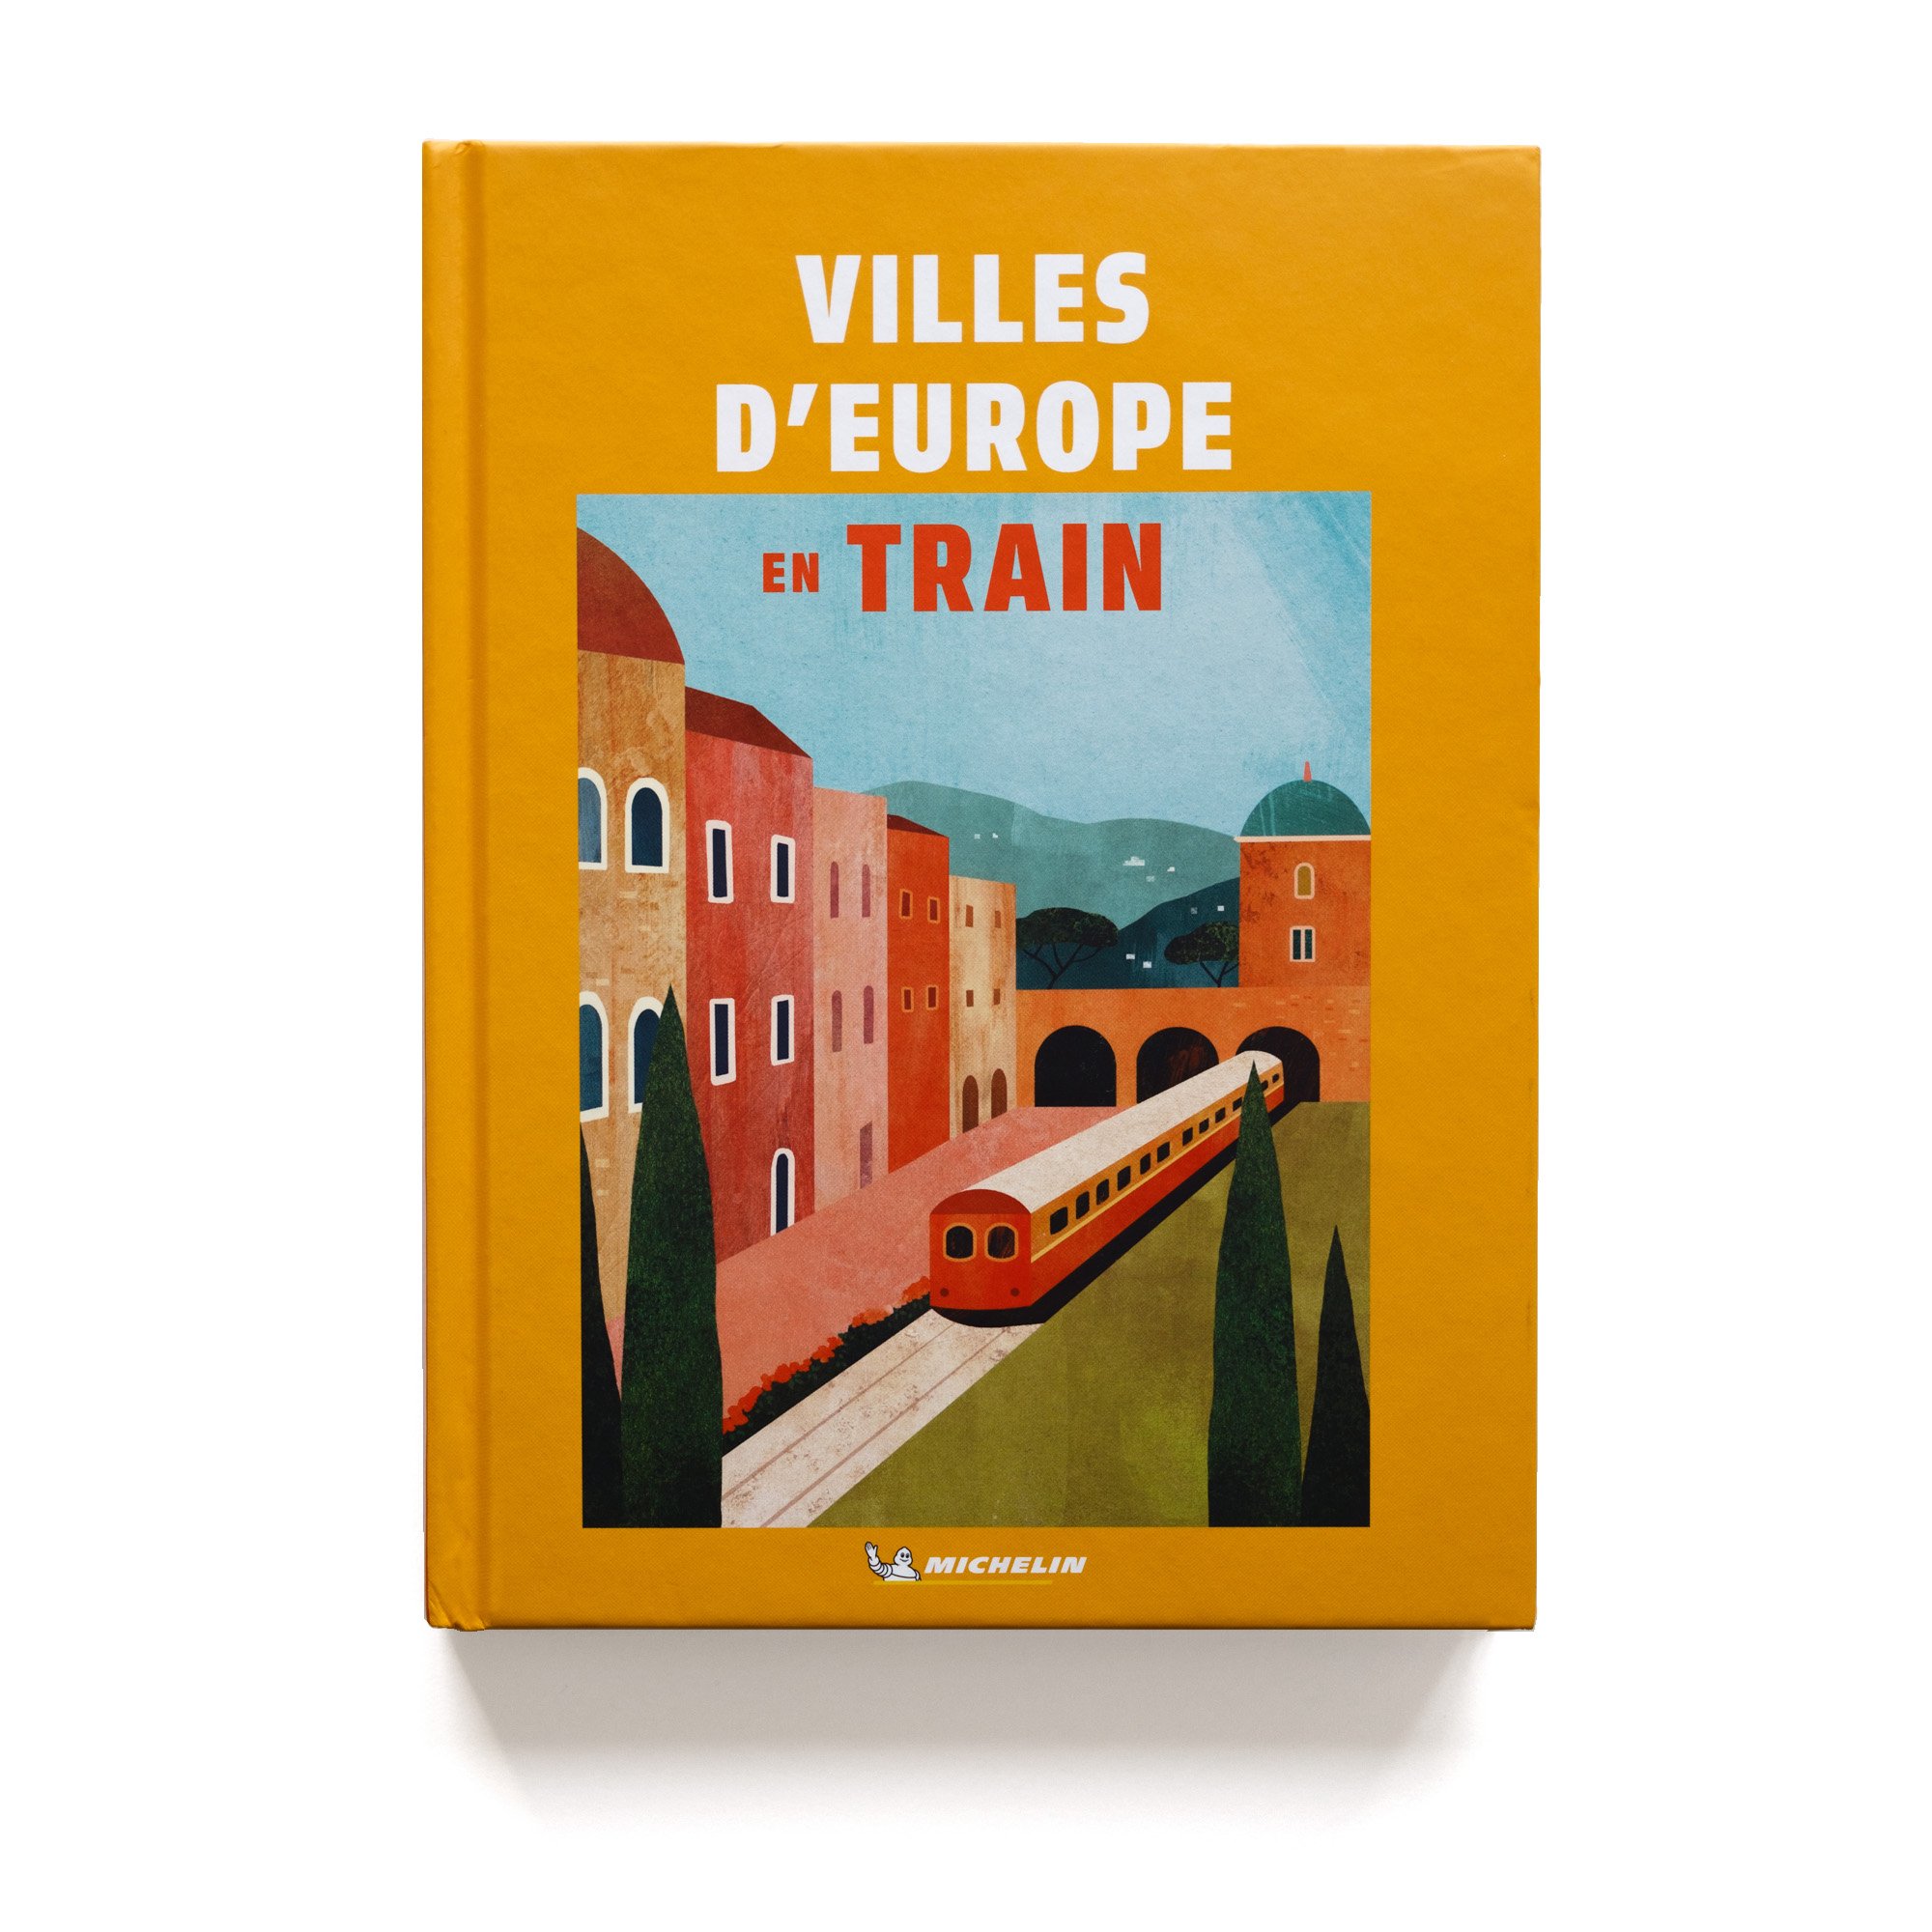   Villes d’Europe en train   Éditions Michelin 255 pages 